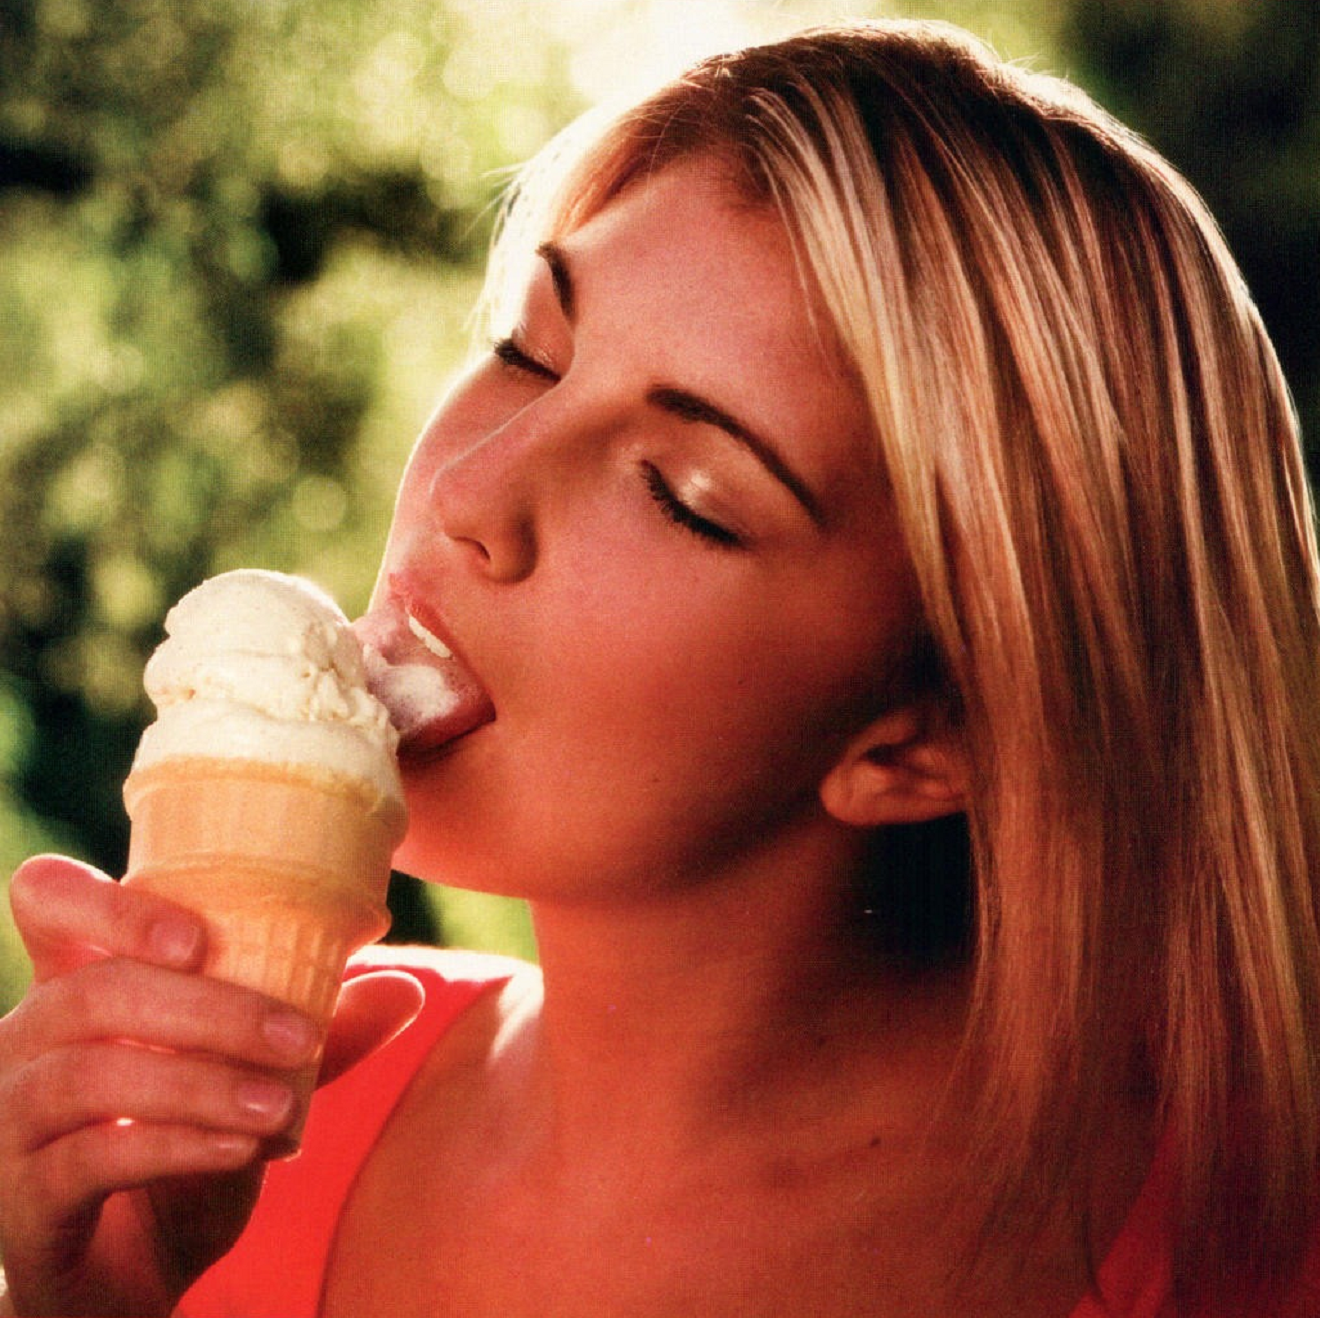 Lick cream. Облизывает мороженое. Девушка ест мороженое. Девушка лижет мороженое. Фотосессия с мороженым.